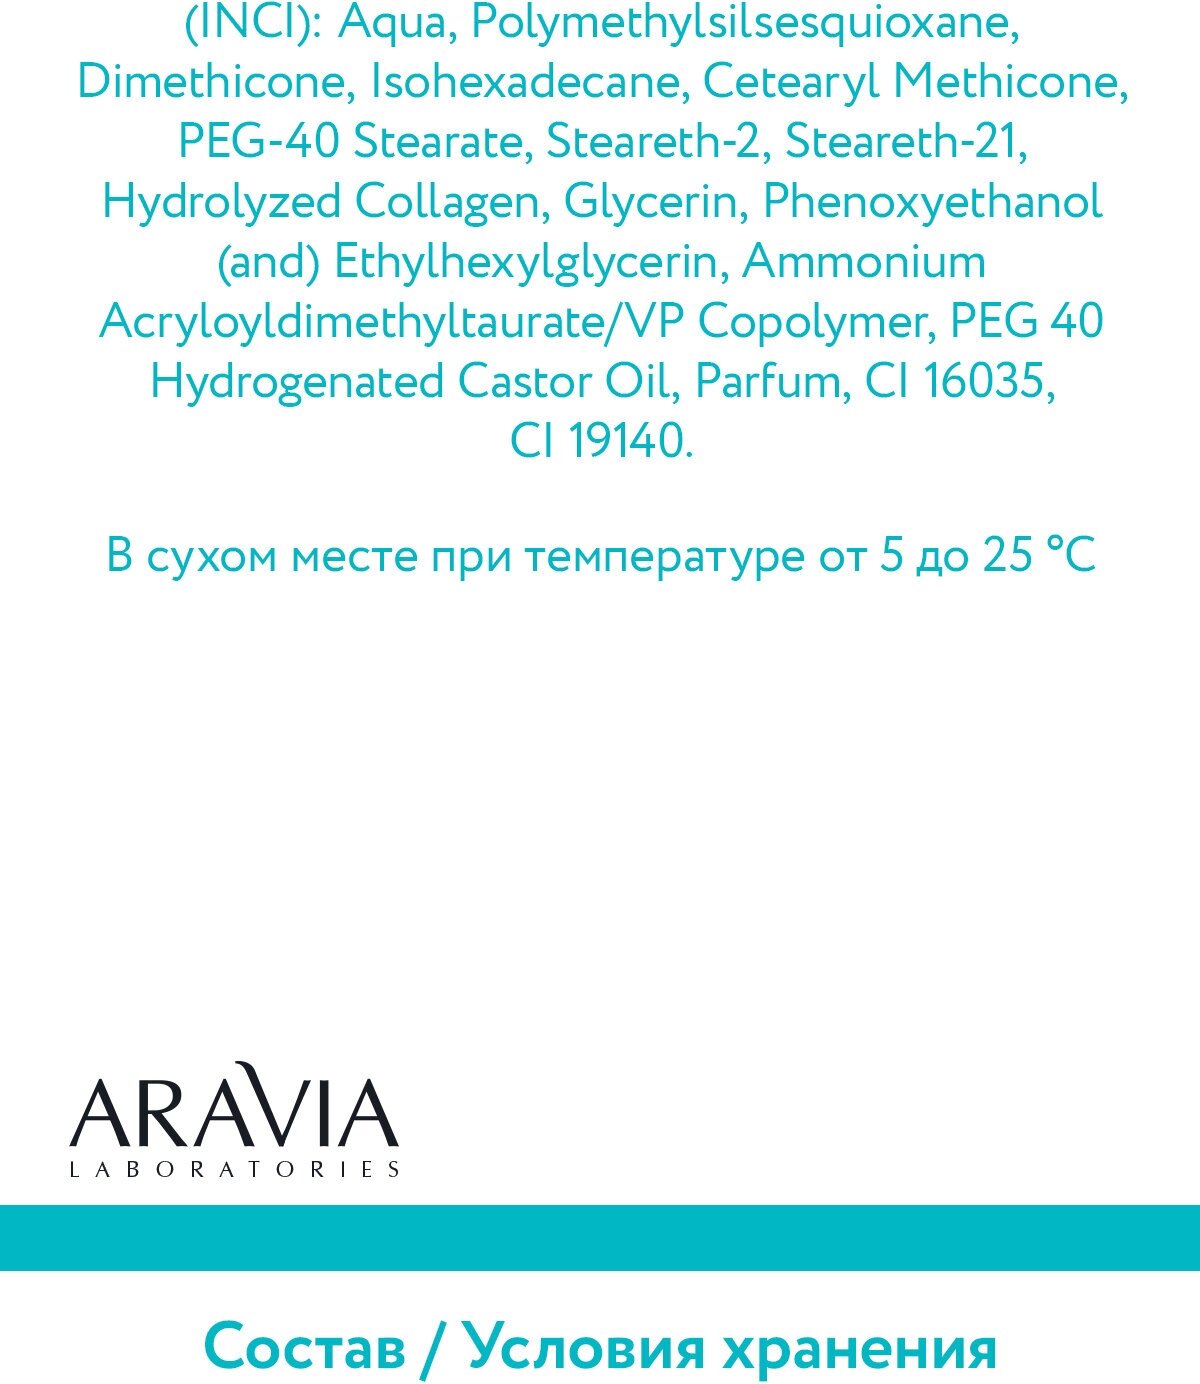 ARAVIA Laboratories Жидкие коллагеновые патчи Collagen Eye Patch, 30 мл (ARAVIA Laboratories, ) - фото №13